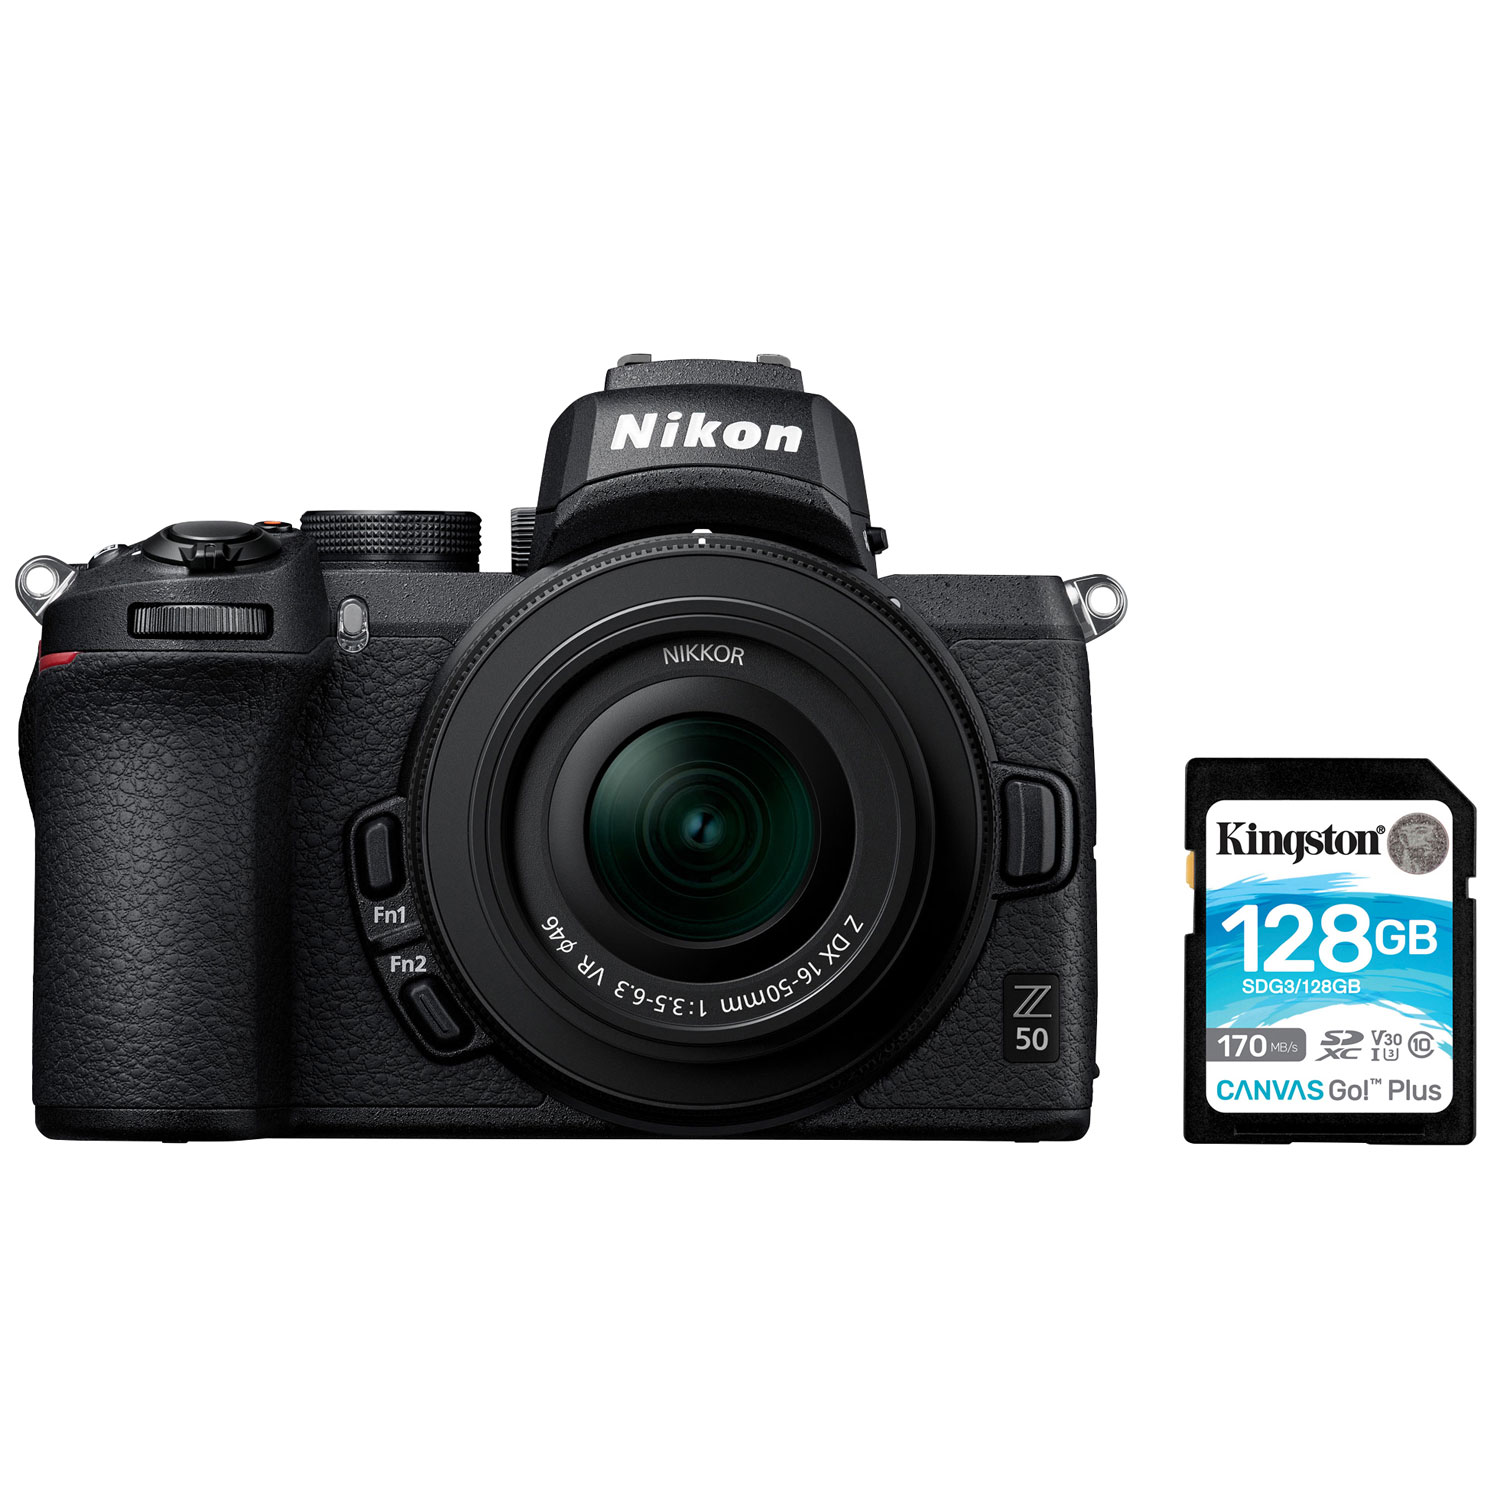 Nikon Z 50 Mirrorless Camera with NIKKOR Z DX 16-50mm f/3.5-6.3 VR Lens Kit & 128GB Memory Card